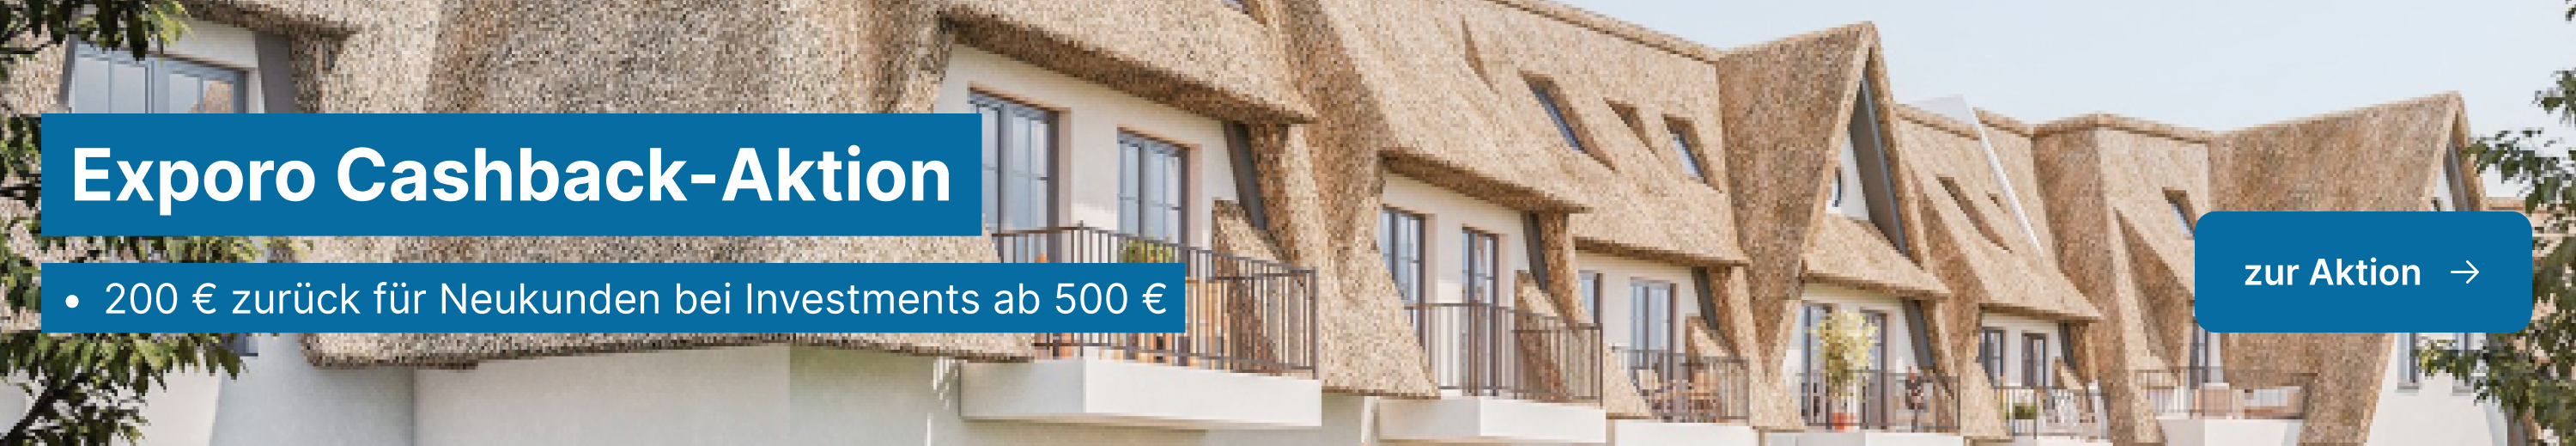 Banner: Exporo Cashback-Aktion, 200 € zurück für Neukunden bei Investments ab 500 €, Bild: eine Reihe reetgedeckter Häuser mit Balkonen